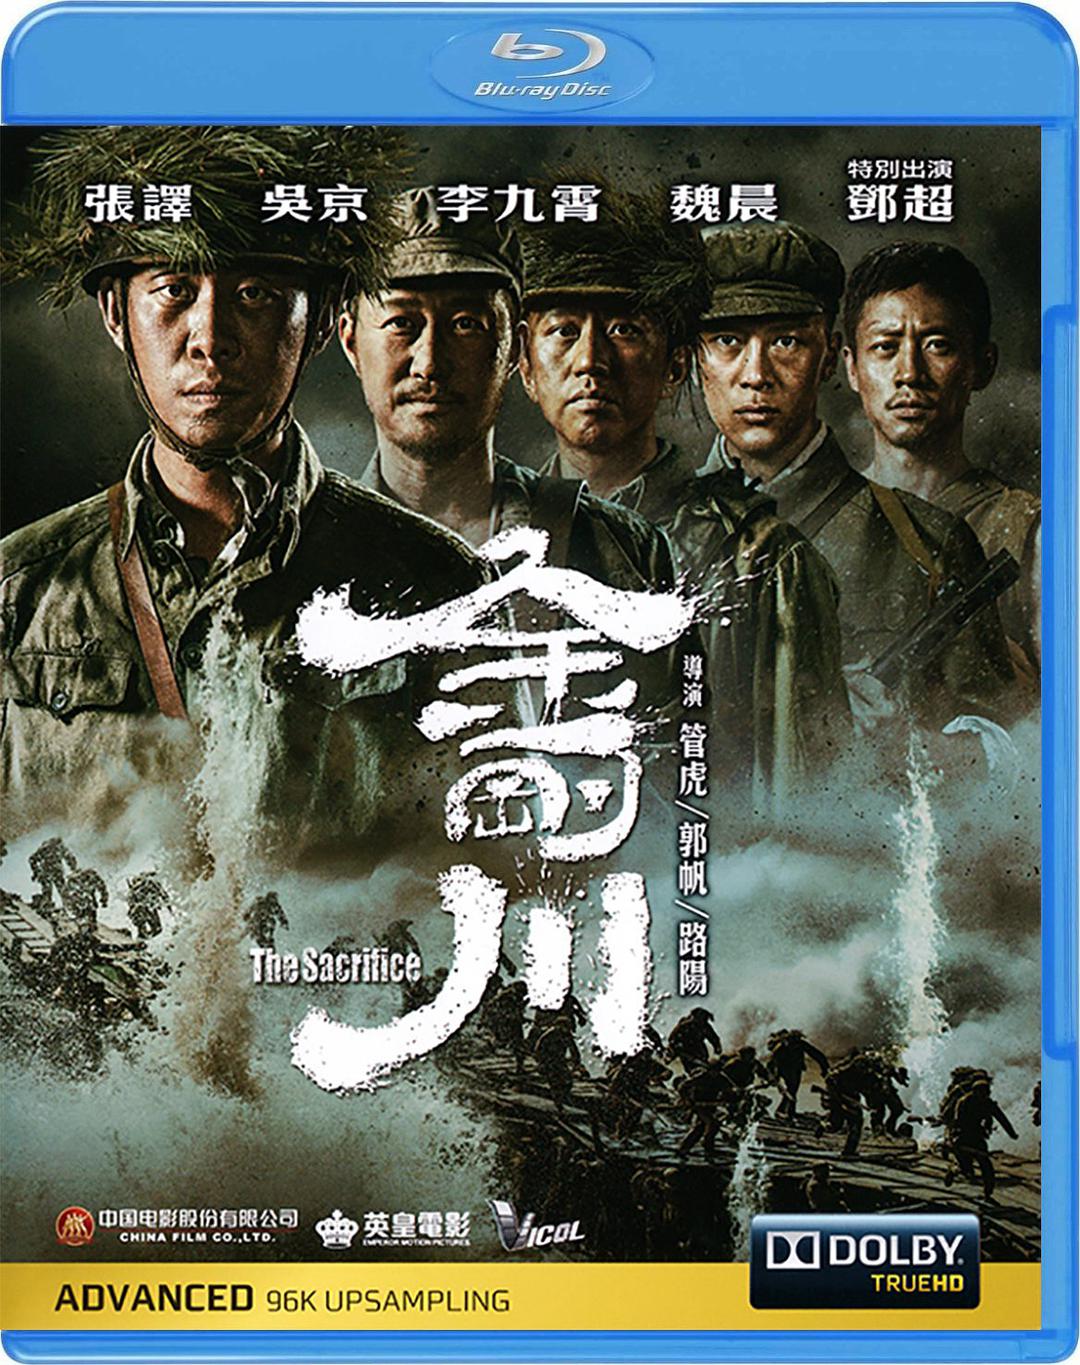 金刚川 [港版原盘 国语中字 DIY简繁字幕] The Sacrifice 2020 Blu-ray 1080p AVC TrueHD 5.1-Pete@HDSky[26.54GB]-1.jpg